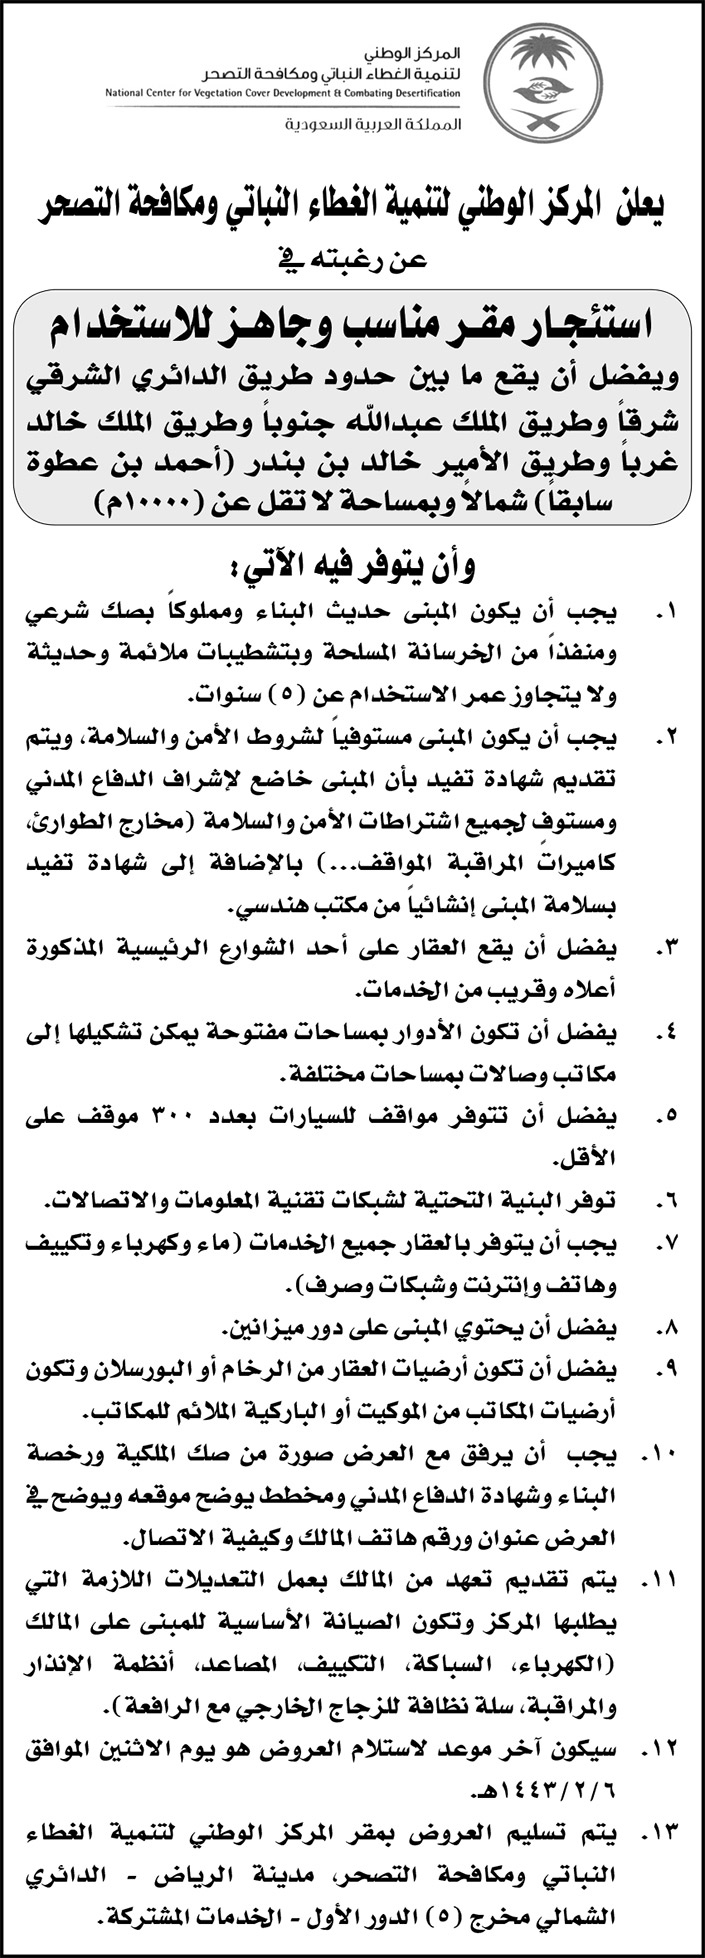 المركز الوطني لتنمية الغطاء النباتي يرغب في استئجار مقر مناسب وجاهز للاستخدام بمدينة الرياض 